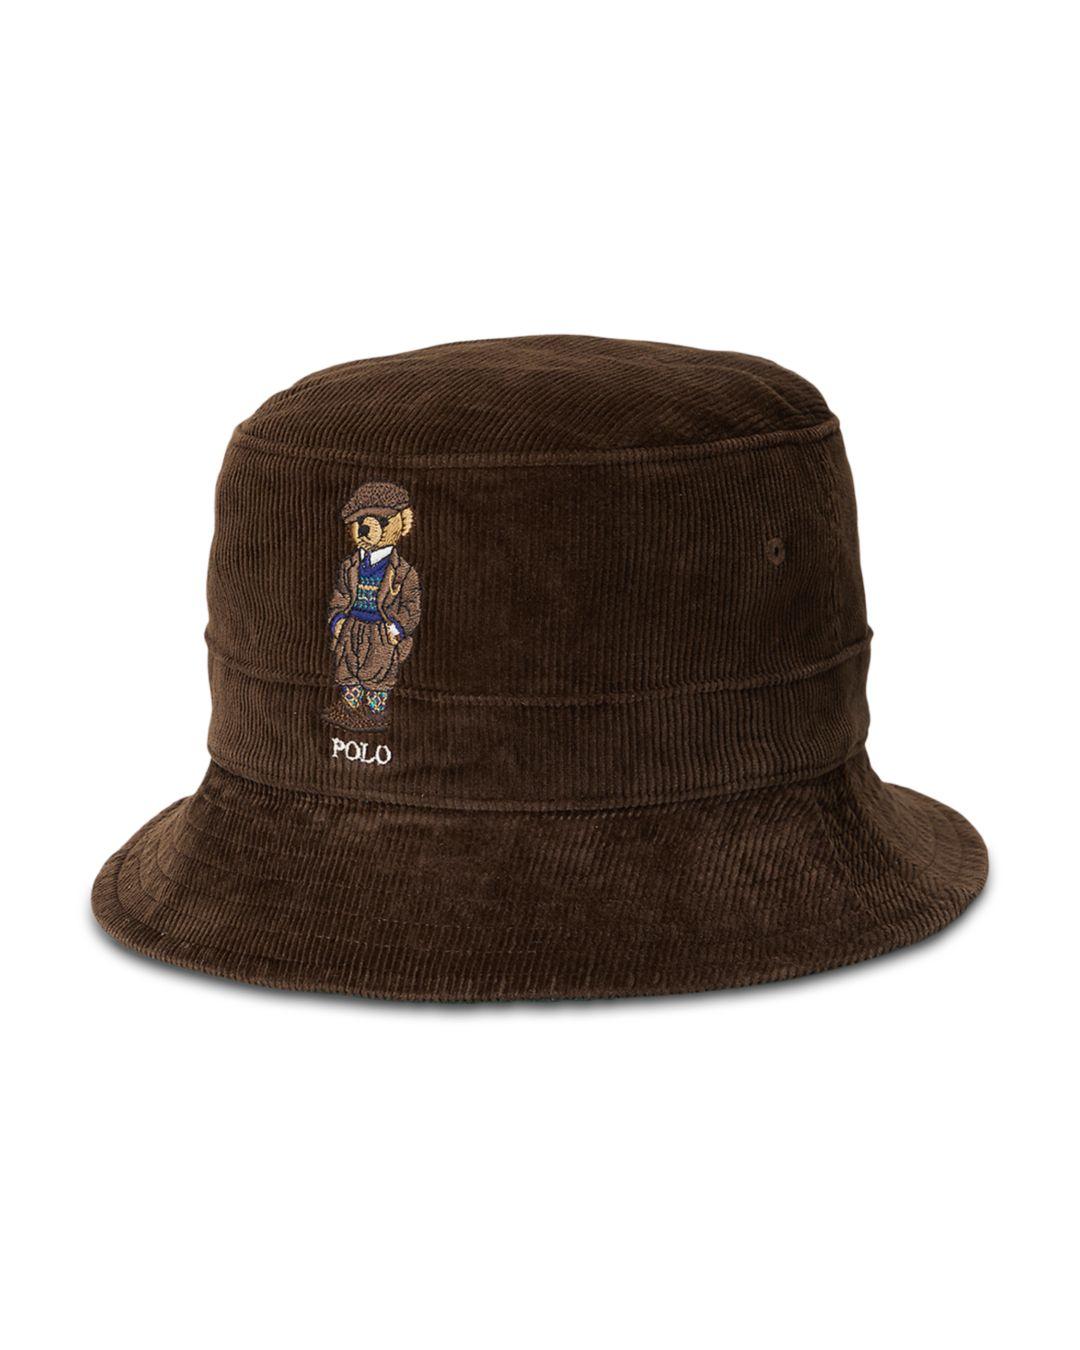 Polo Ralph Lauren Polo Bear Corduroy Bucket Hat in Cooper Brown (Brown ...